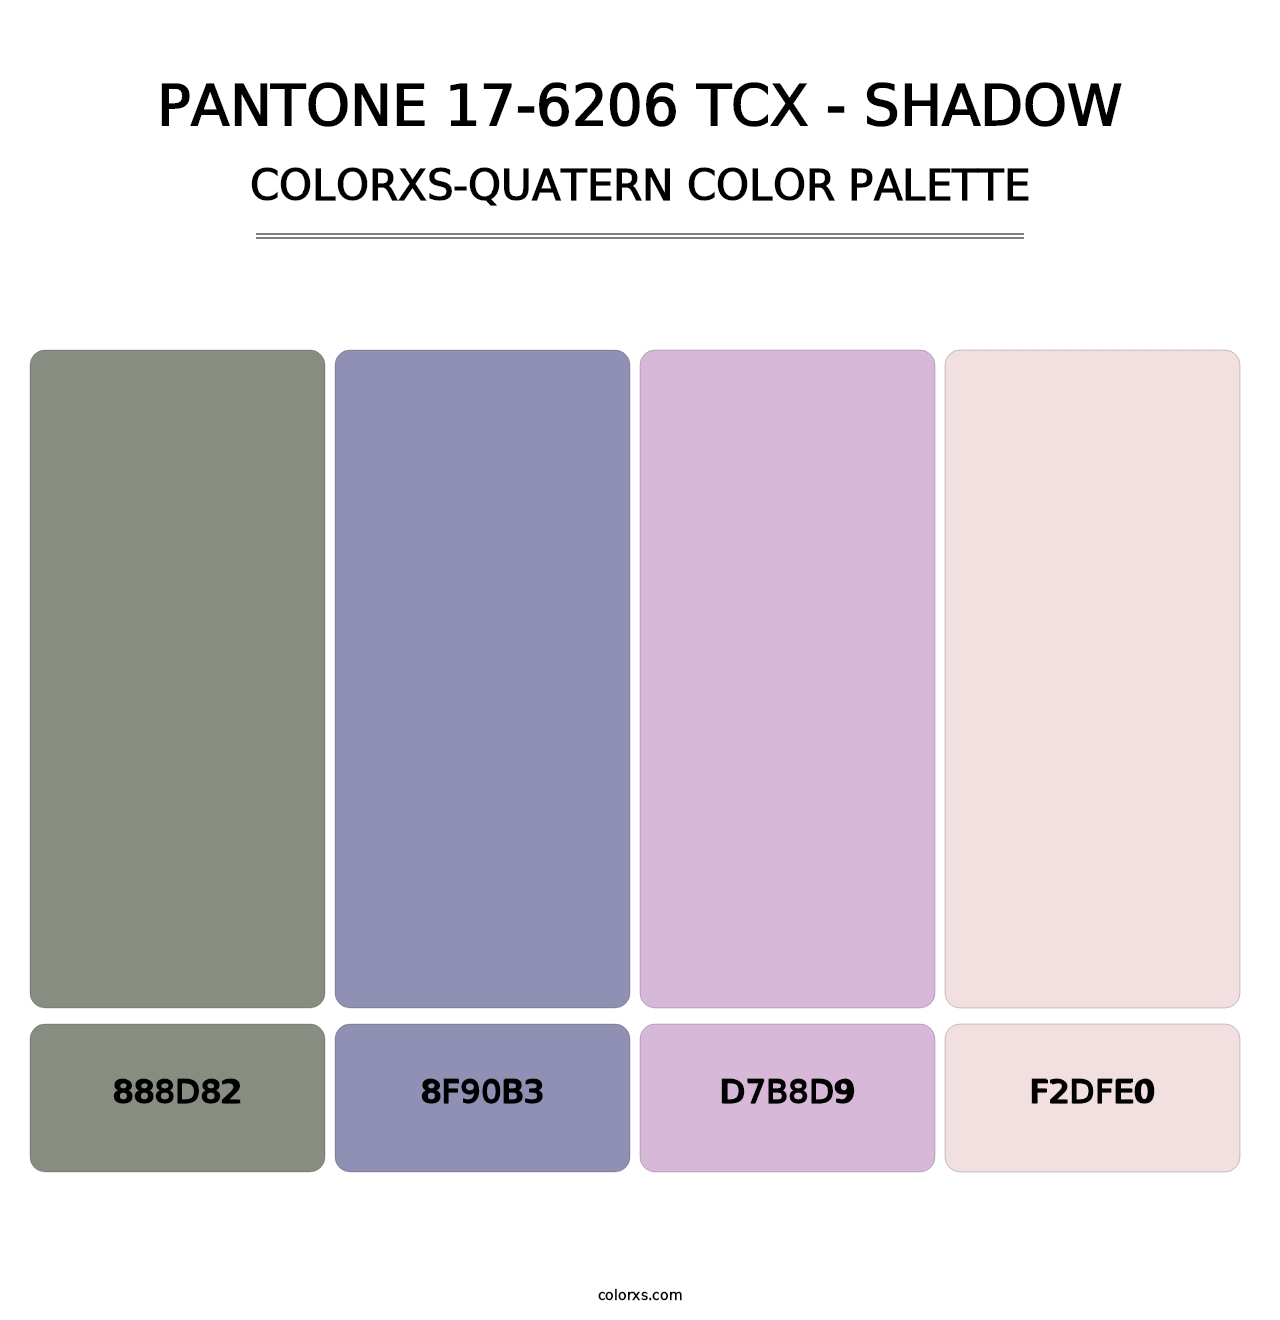 PANTONE 17-6206 TCX - Shadow - Colorxs Quatern Palette